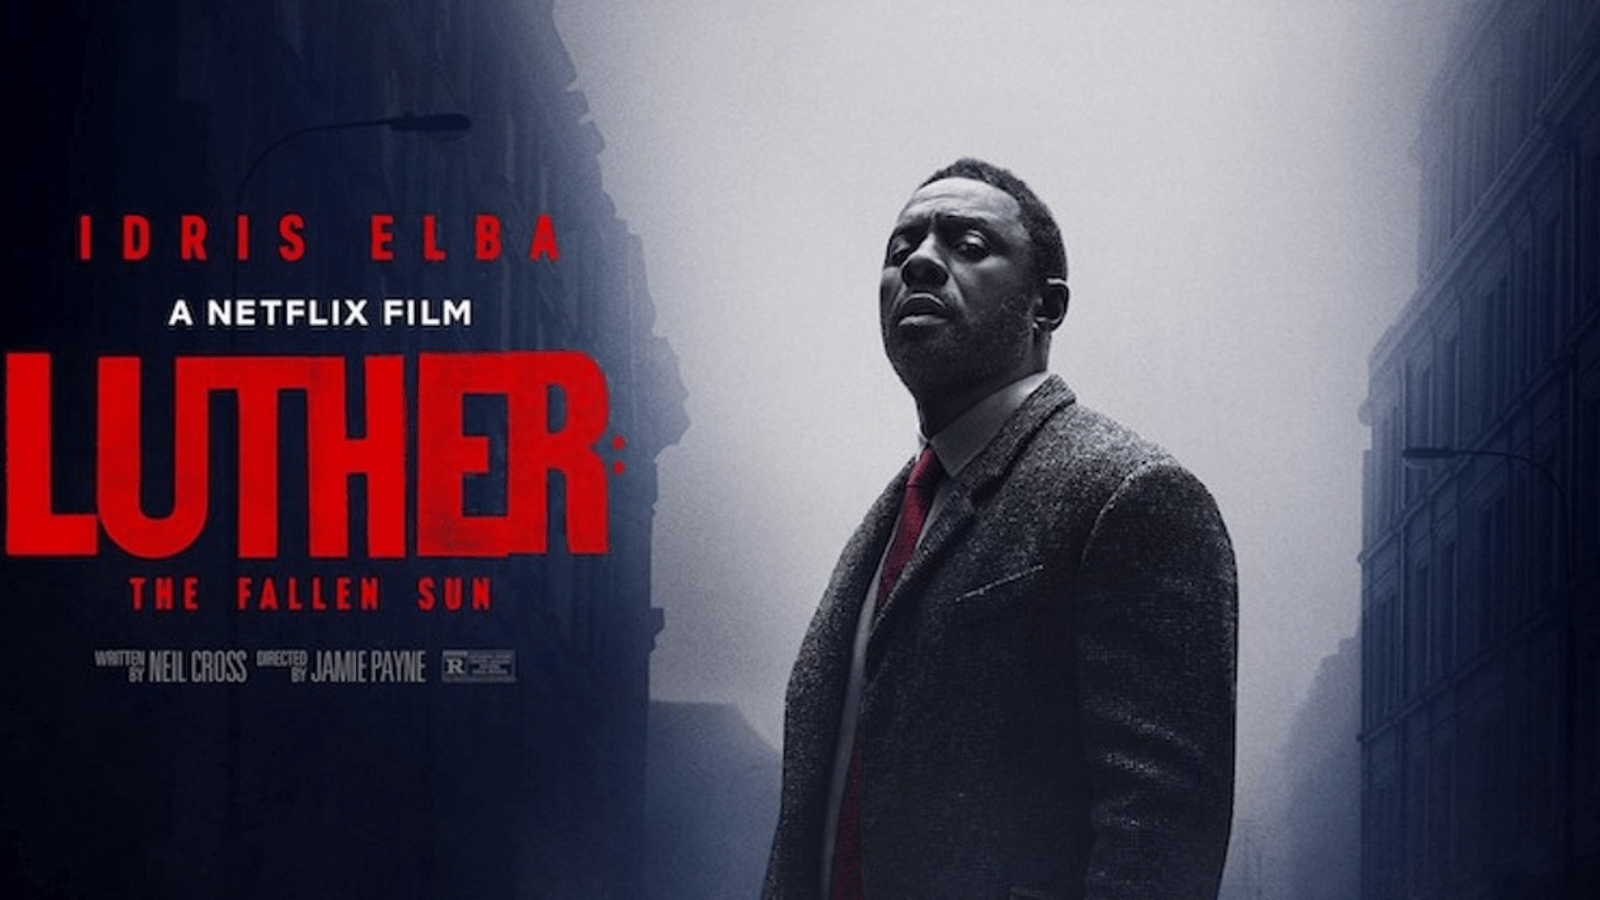 20 Mart ve 26 Mart tarihleri arasında Netflix'te  en çok izlenen film Luther: The Fallen Sun oldu.